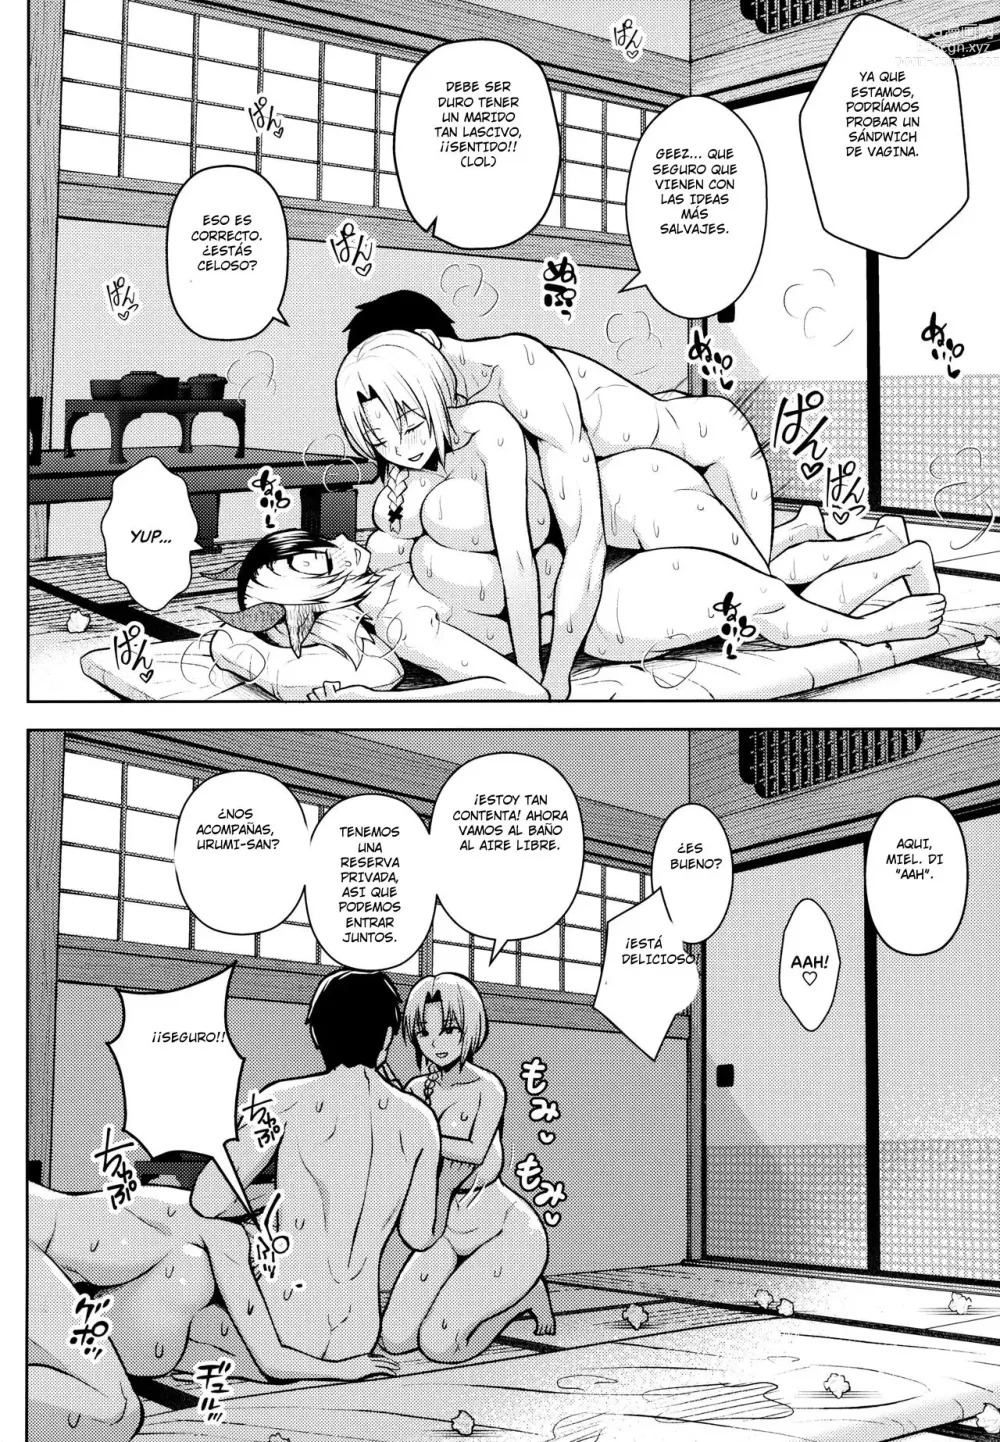 Page 29 of doujinshi Oku-san no Oppai ga Dekasugiru no ga Warui! 5